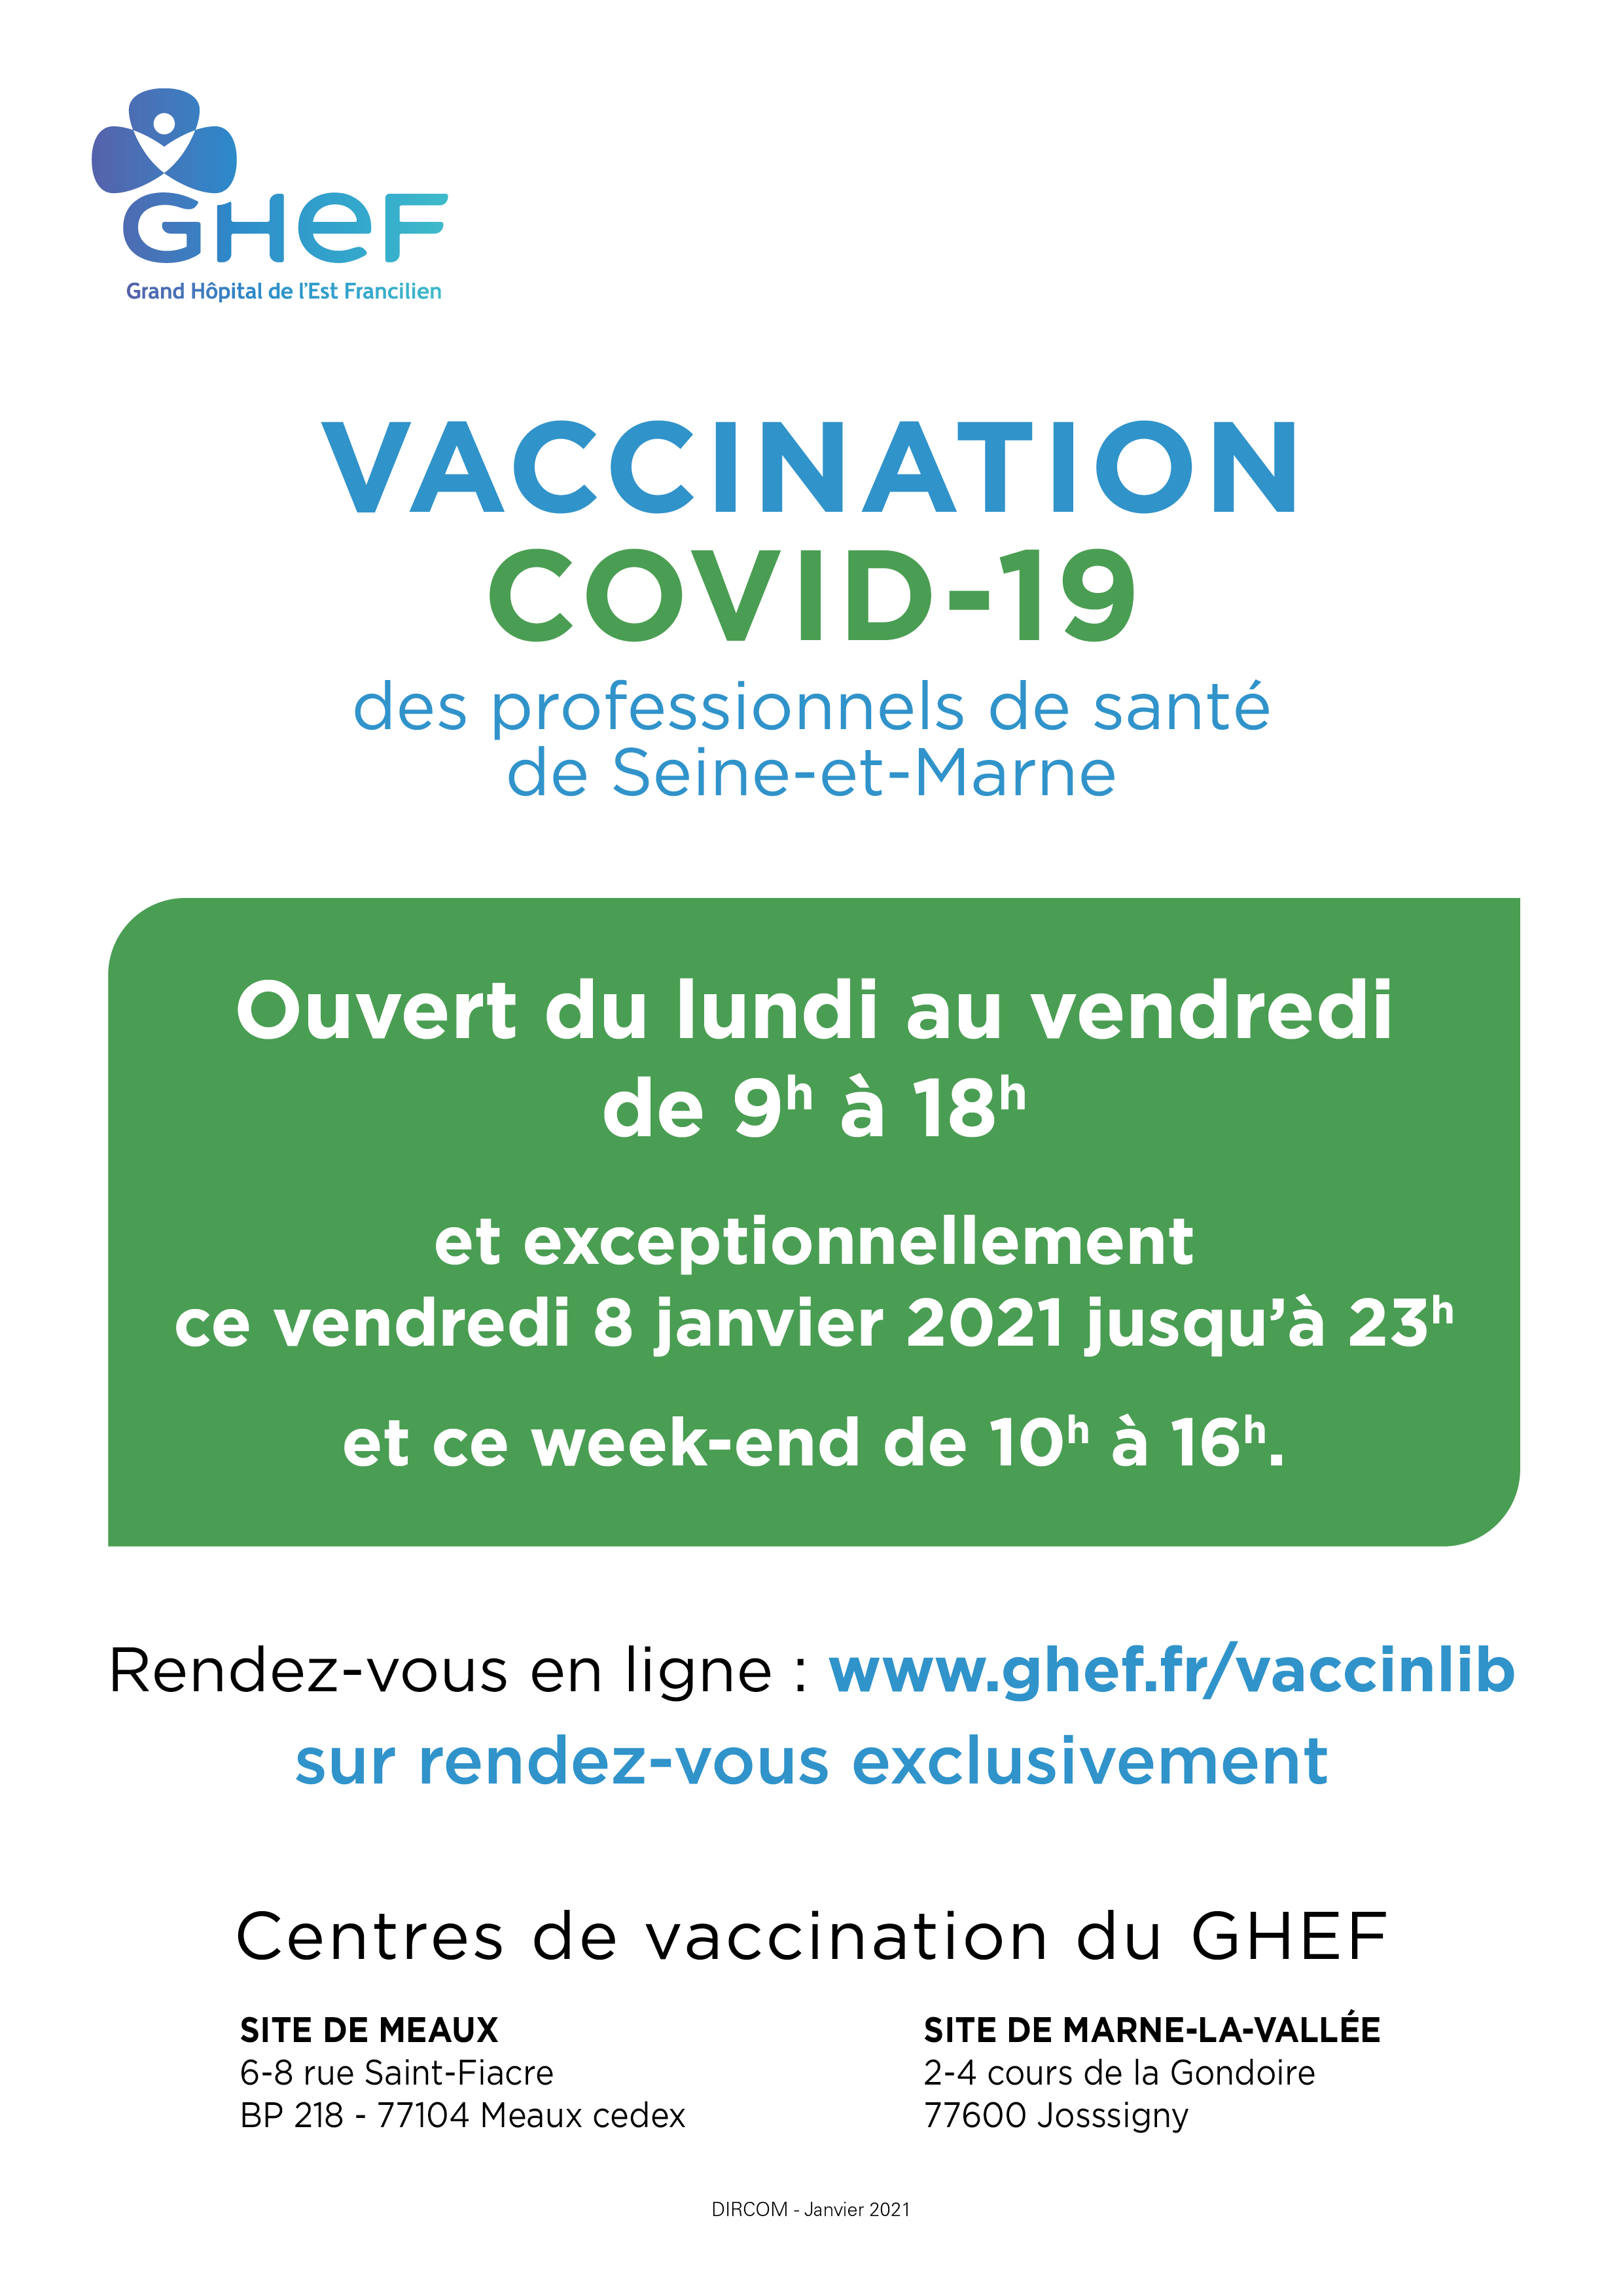 Vaccination Covid_19 GHEF Professionnels santé liberaux